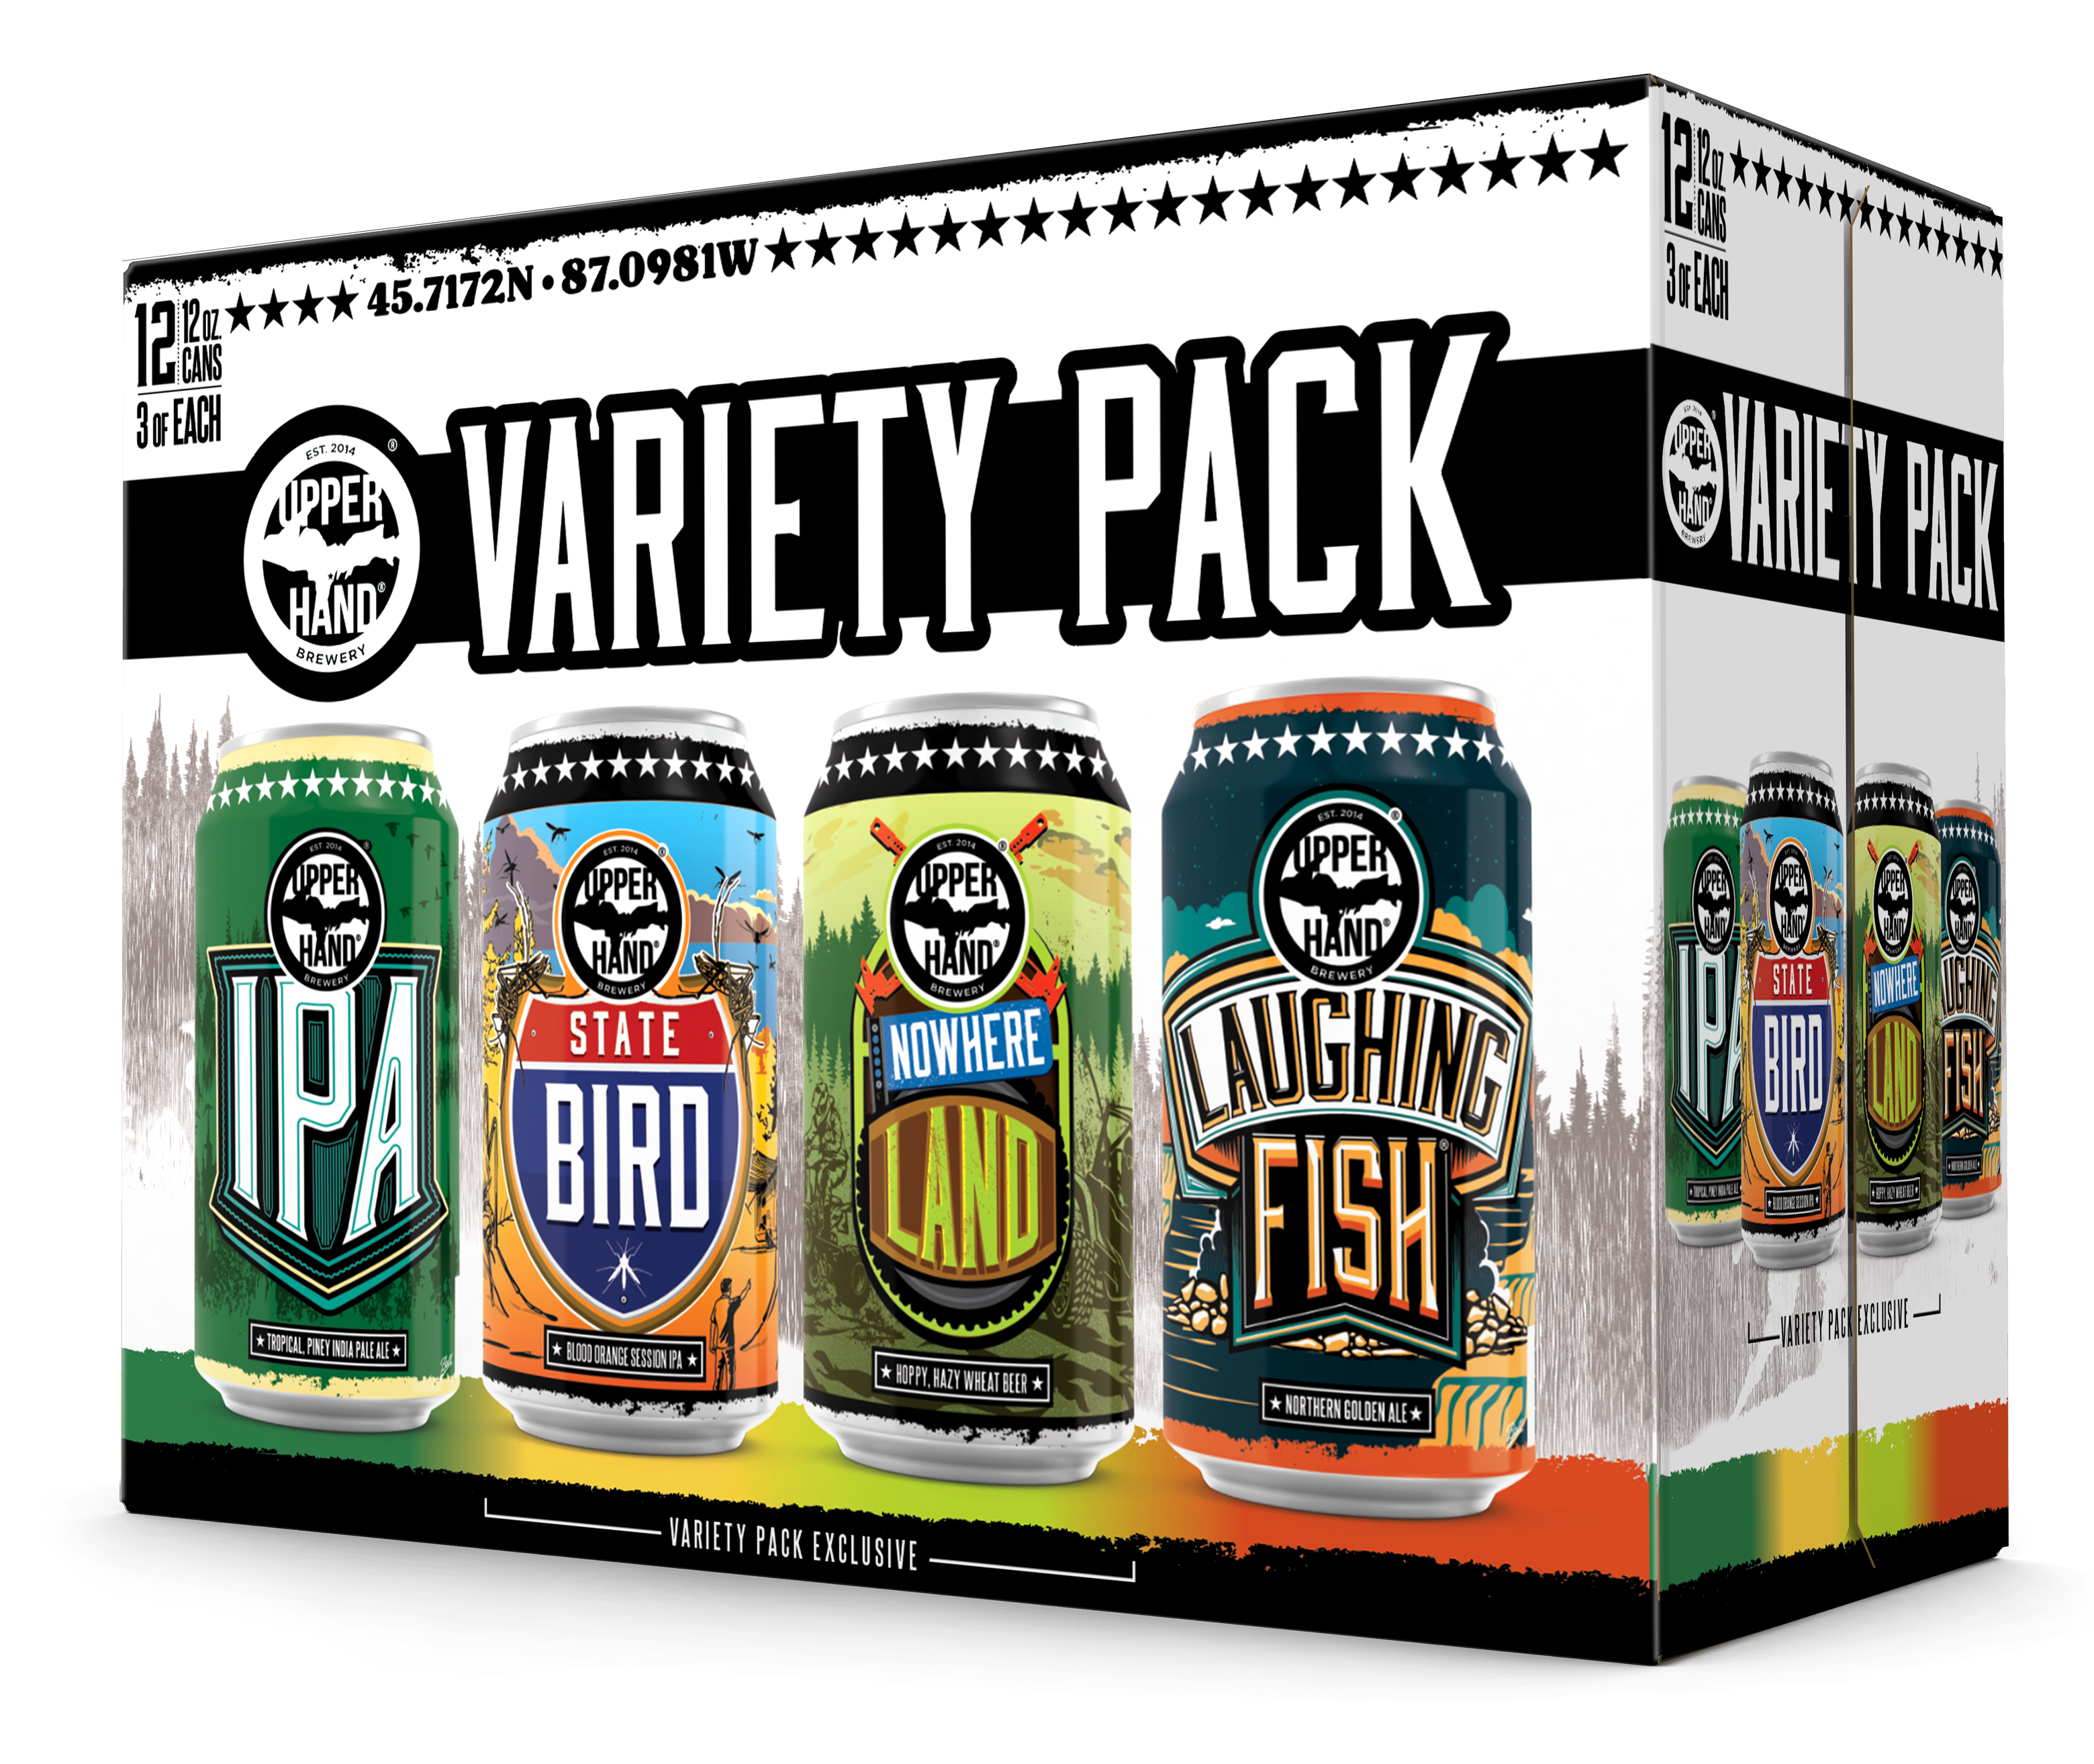 Variety Pack Brand Rendering